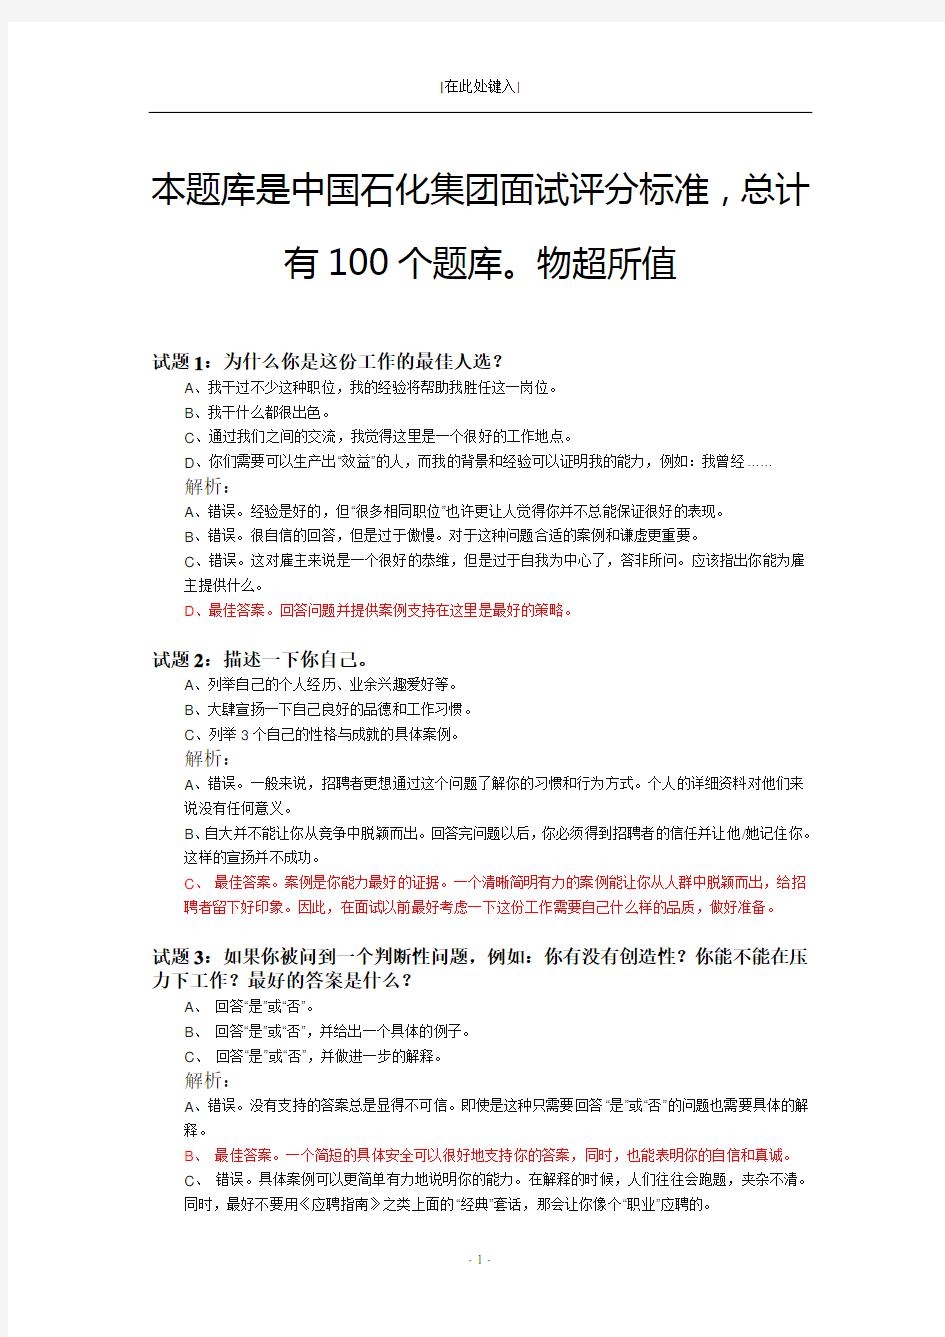 中国石化面试经验100个总结